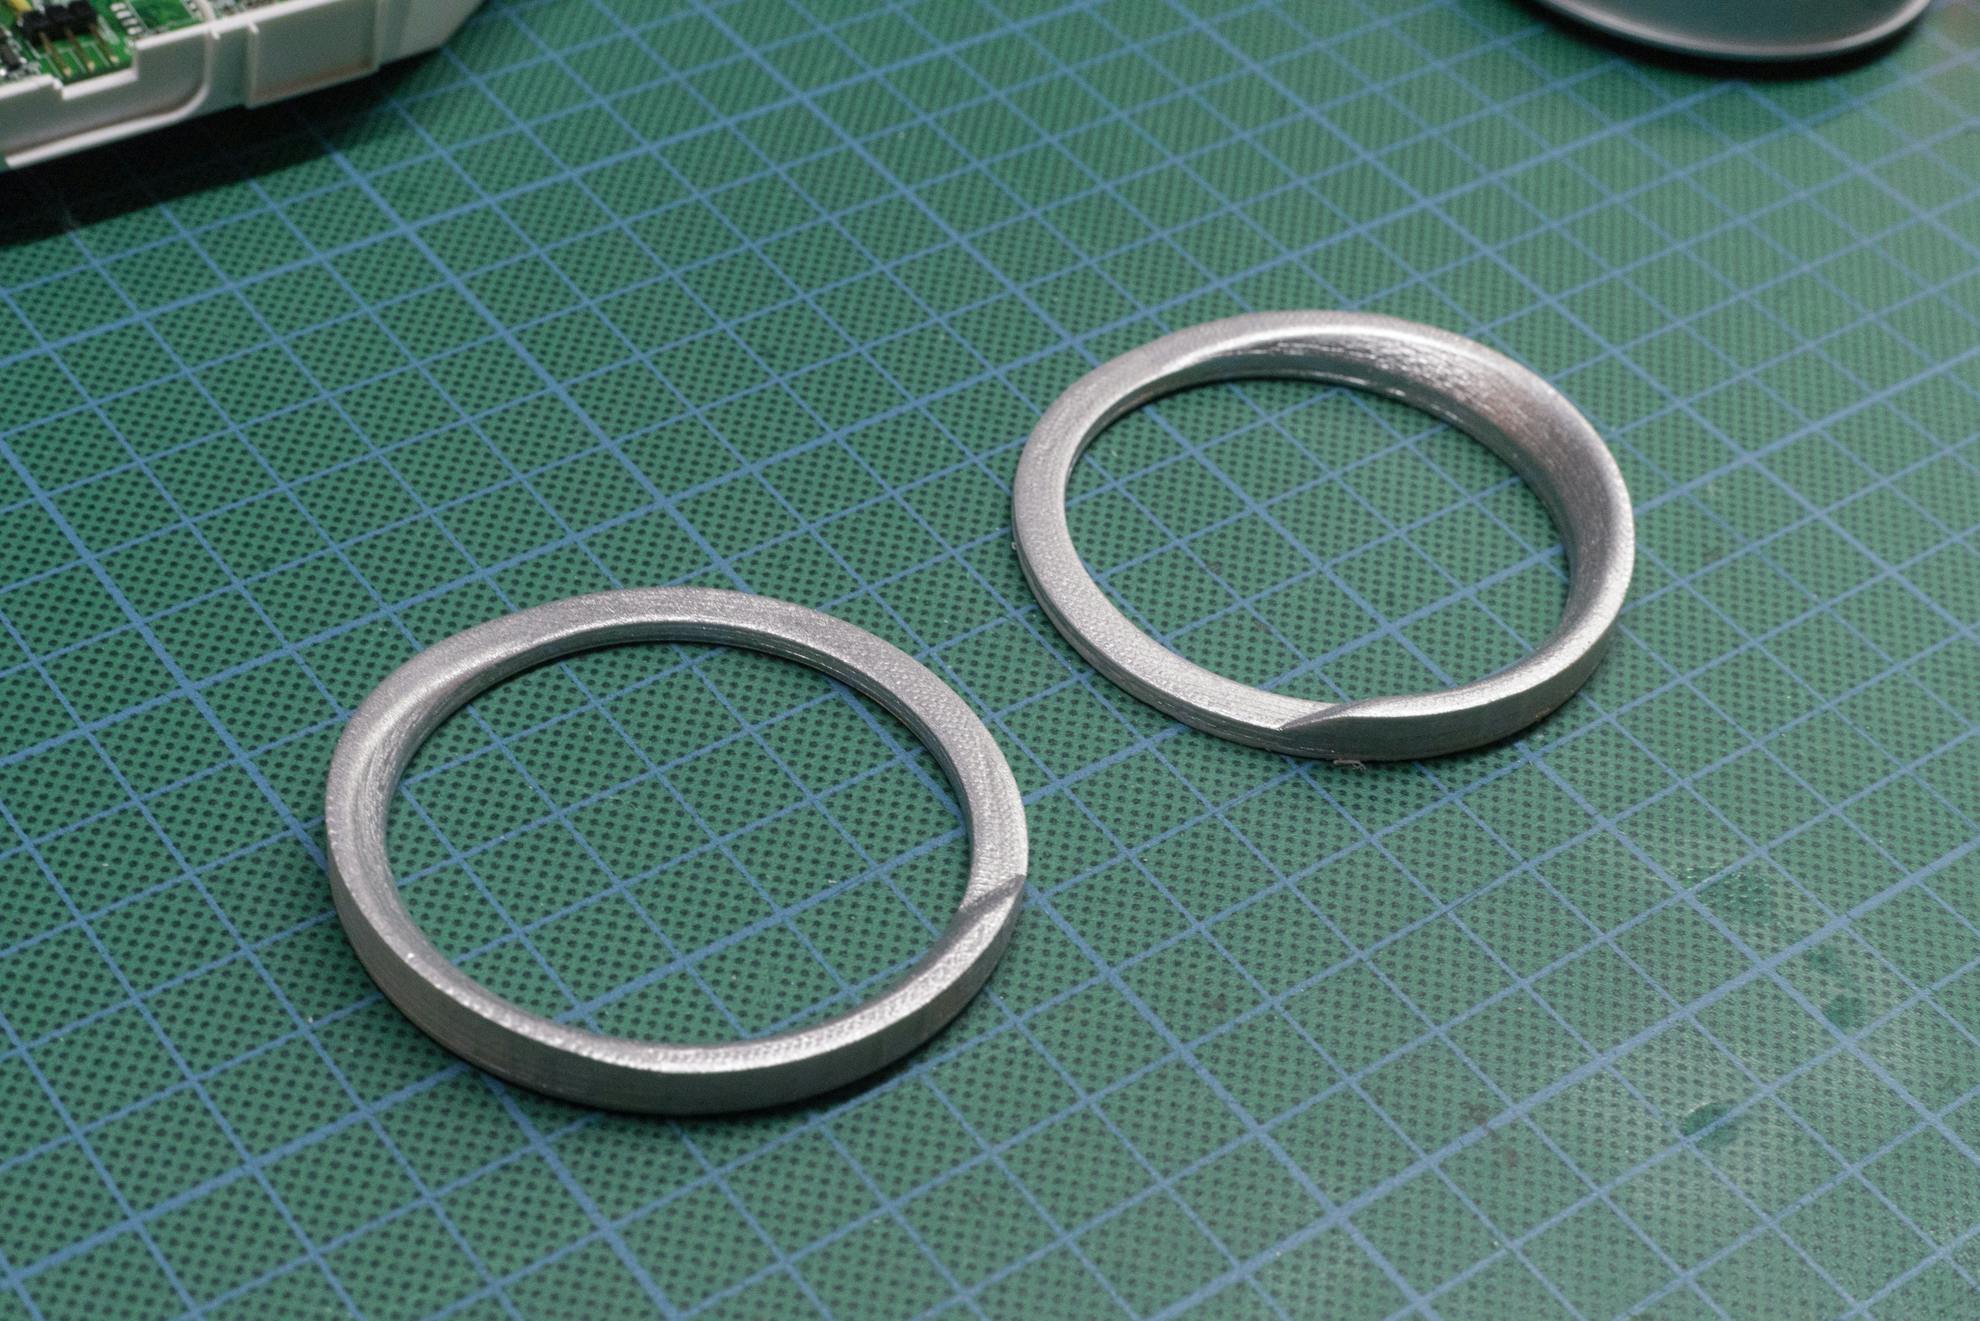 3D printed gimbal rings